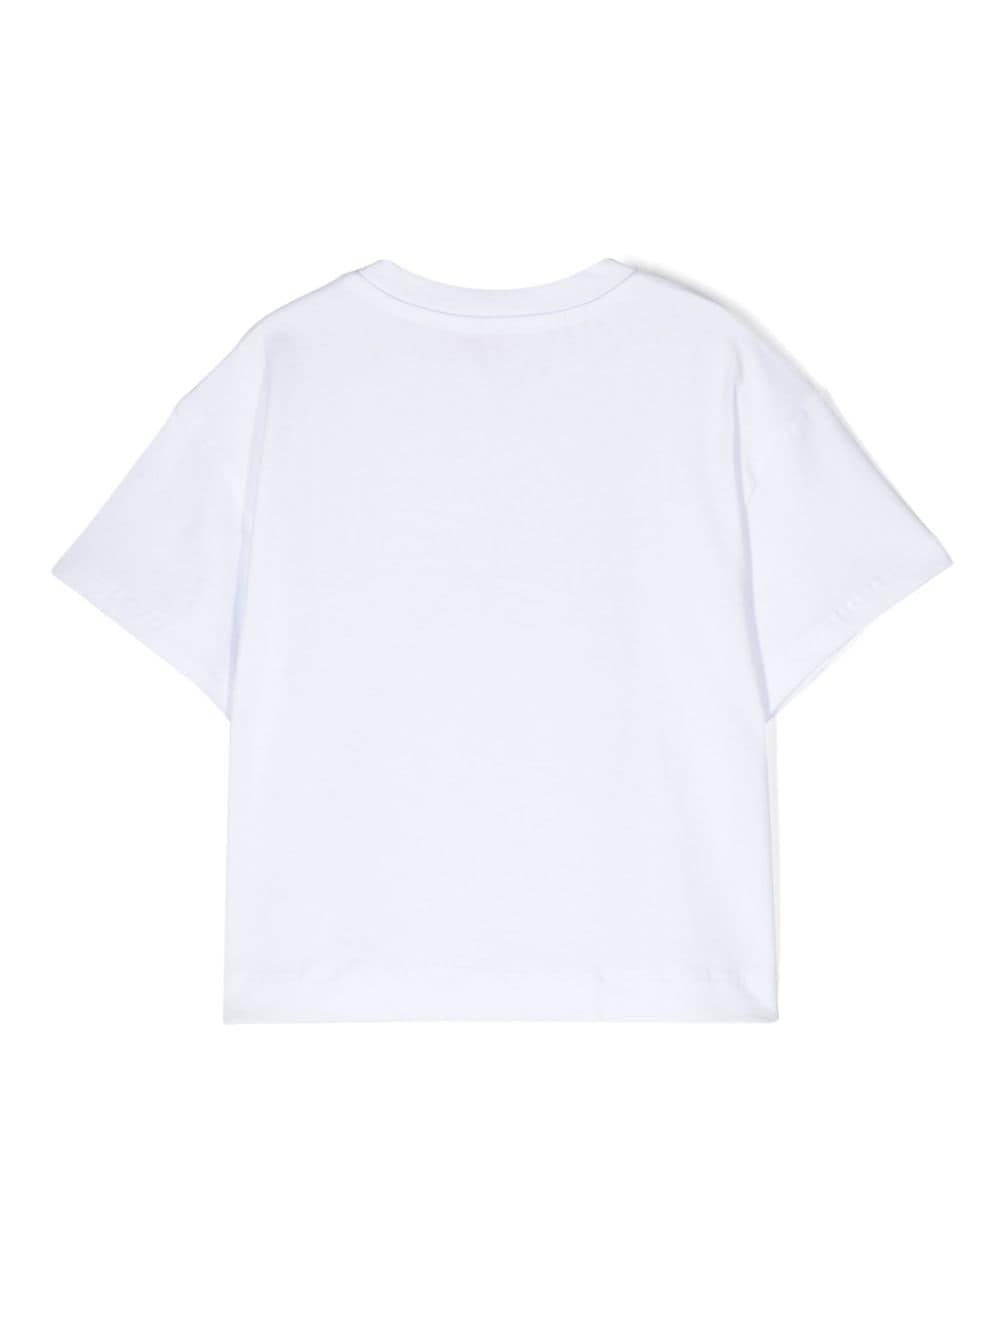 T-shirt fille blanc